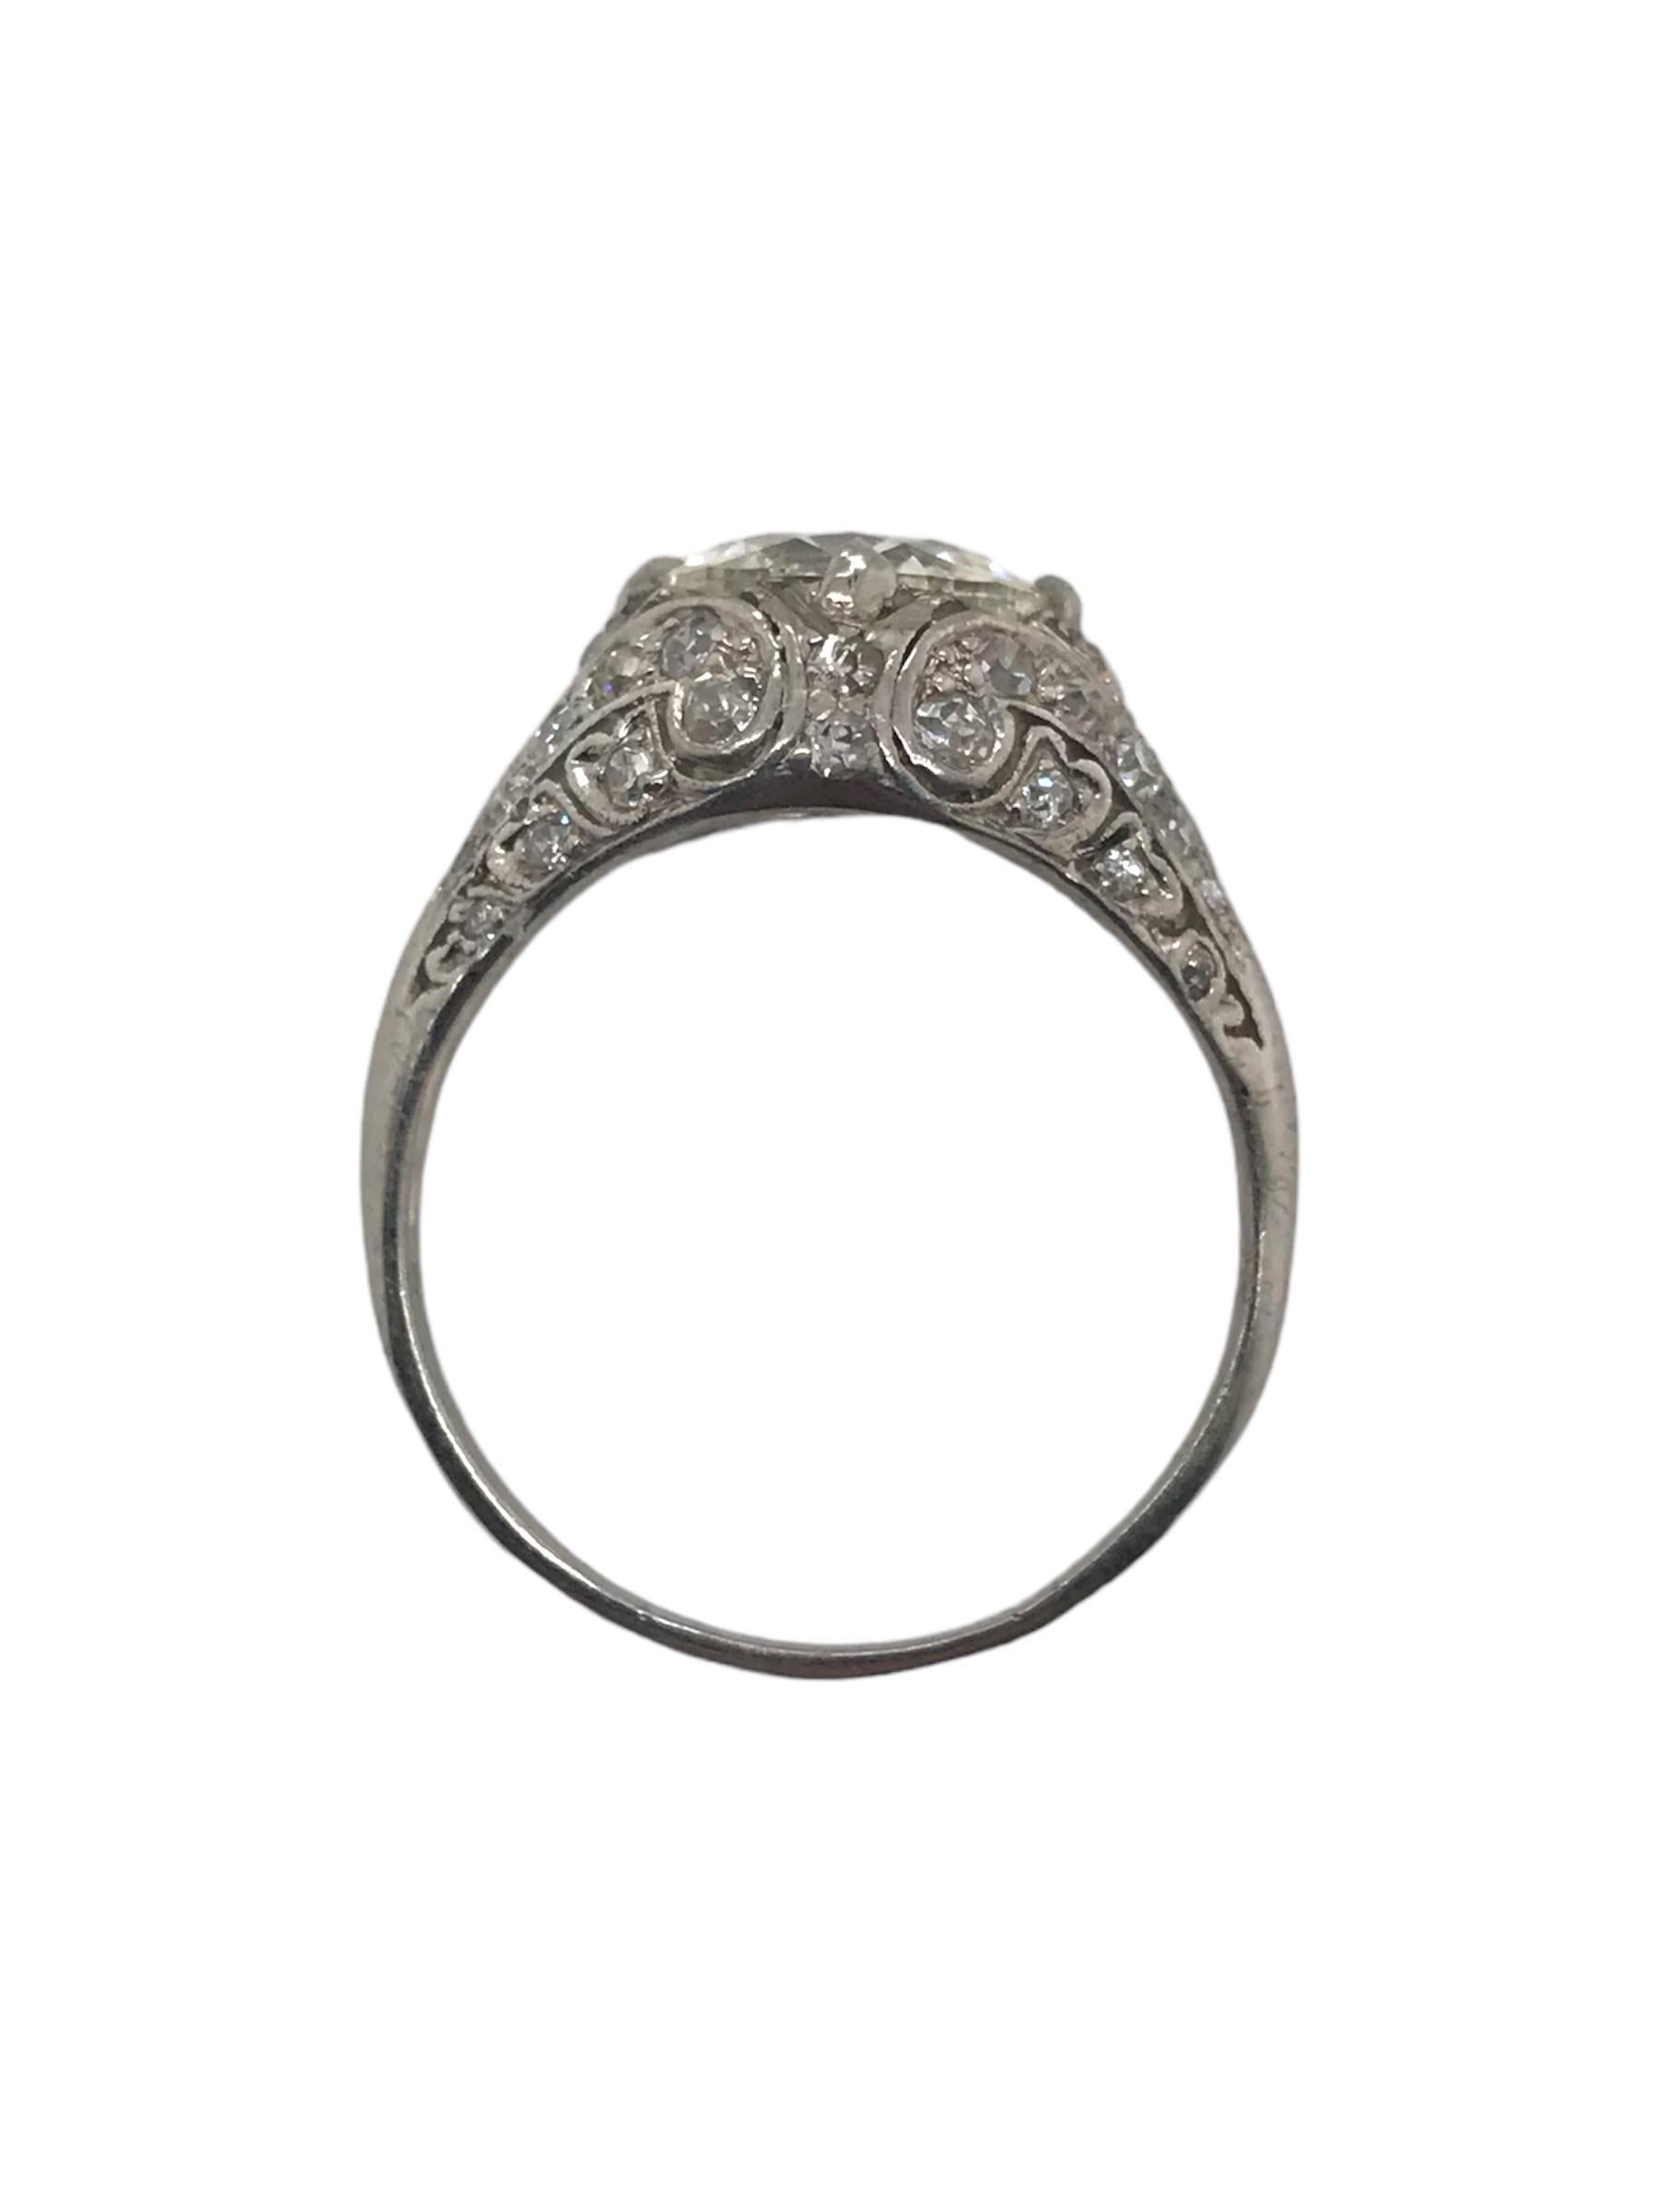 Edwardian Era Platinum 2.02 Carat Old European Cut Engagement Ring For Sale 2